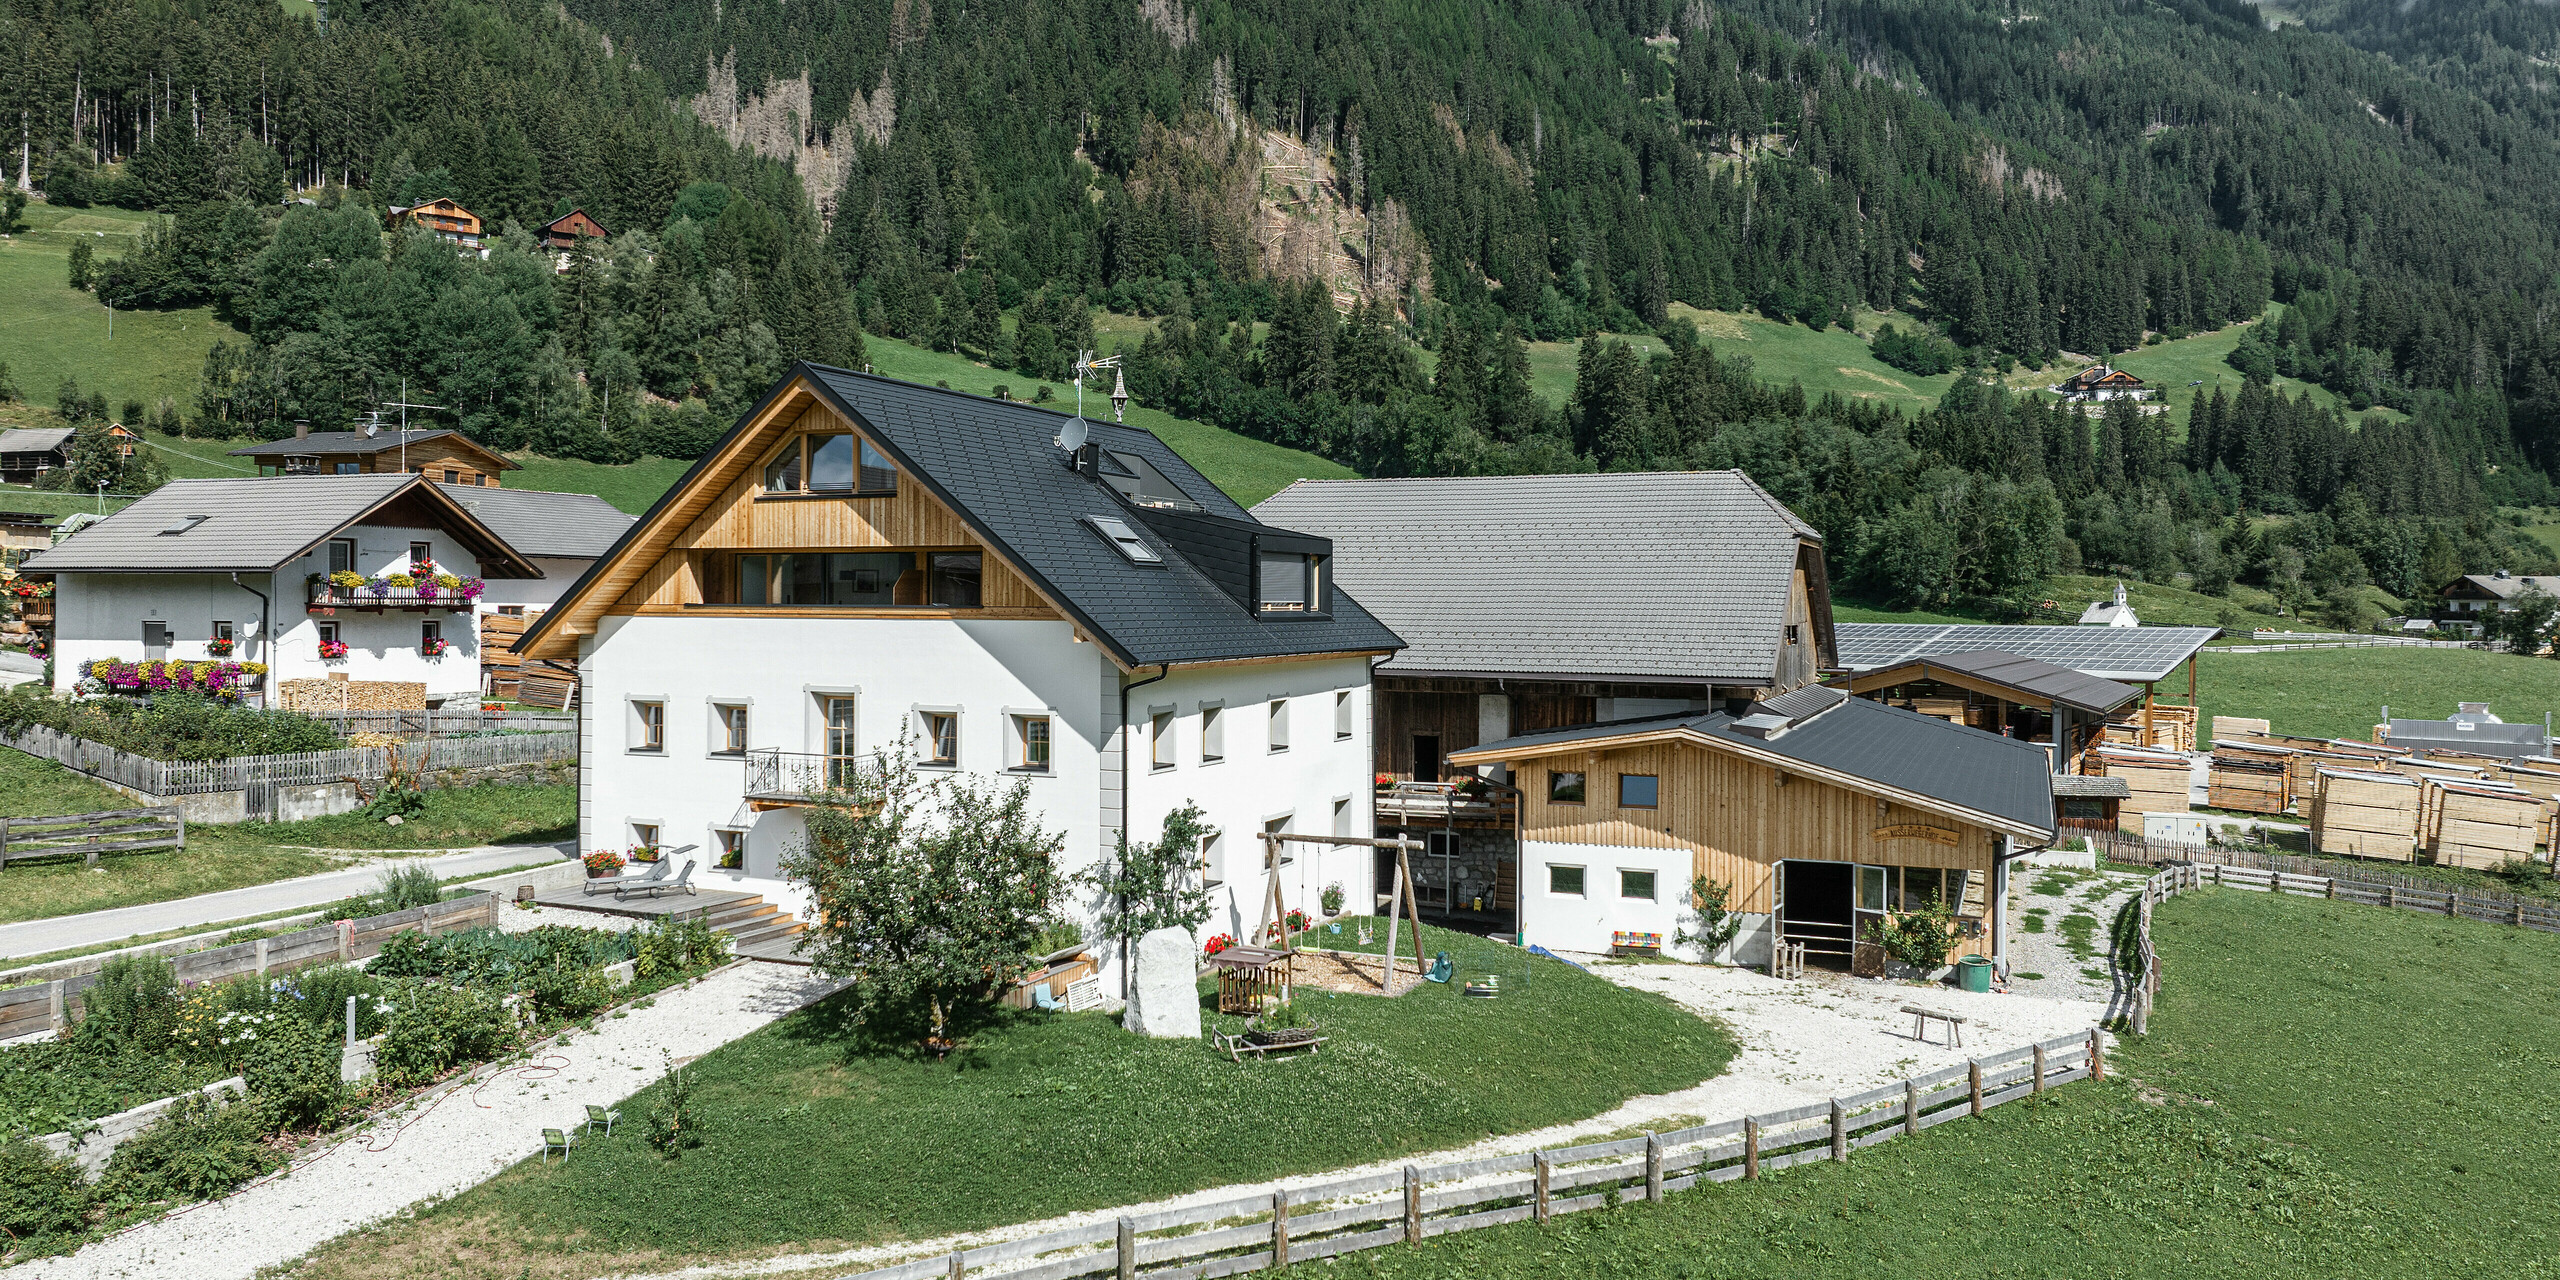 Pohled z ptačí perspektivy na Ausserwegerhof v Jižním Tyrolsku se střechou PREFA s dlouhou životností v barvě P.10 antracit. Prázdninové apartmány jsou zasazeny do zelené krajiny údolí Antholz s malebnými lesy a horami v pozadí. Robustní střešní šindel PREFA DS.19 nabízí ochranu tradičním budovám v teplých letních měsících i v ledových zimních podmínkách.